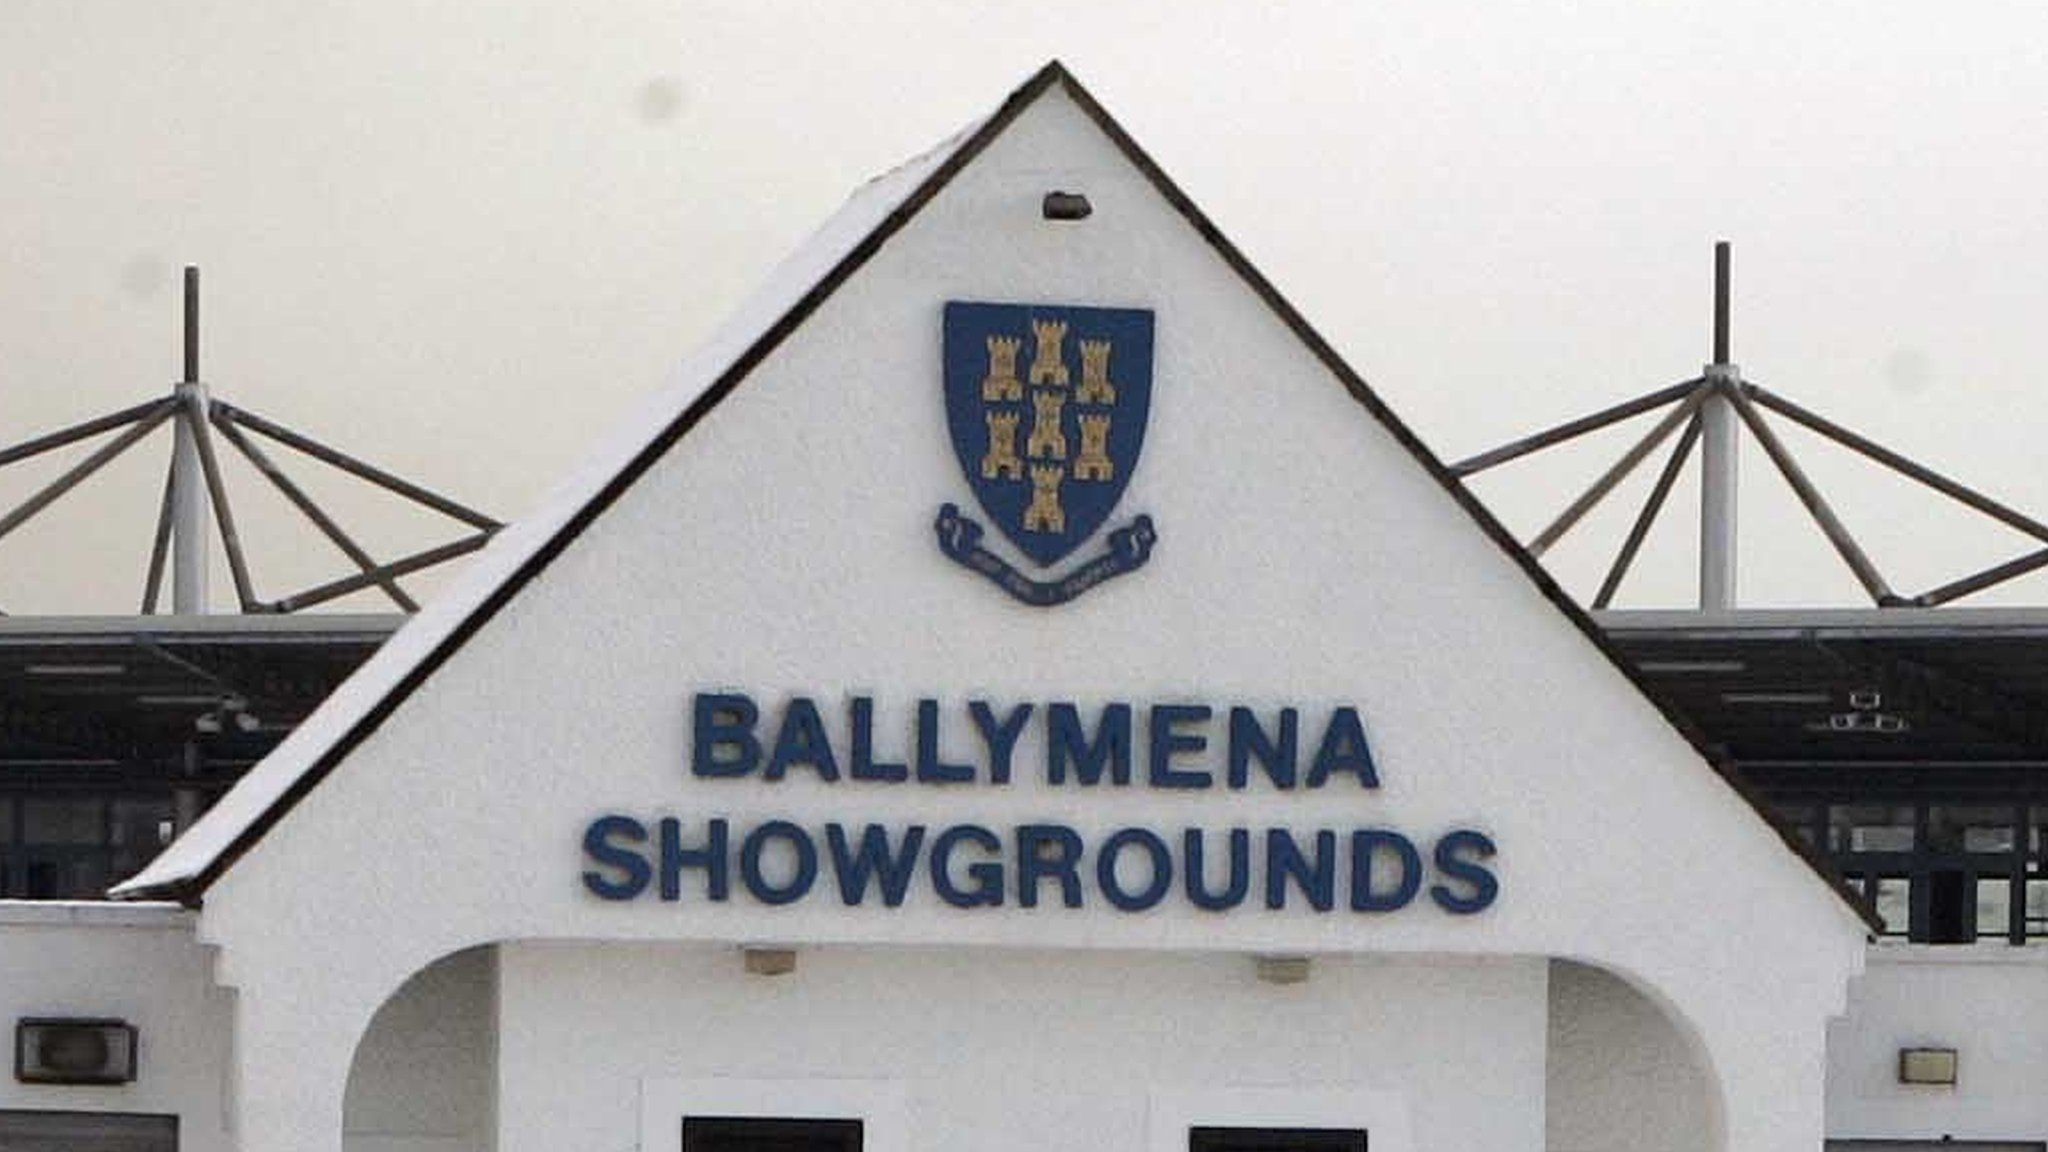 Ballymena Showgrounds